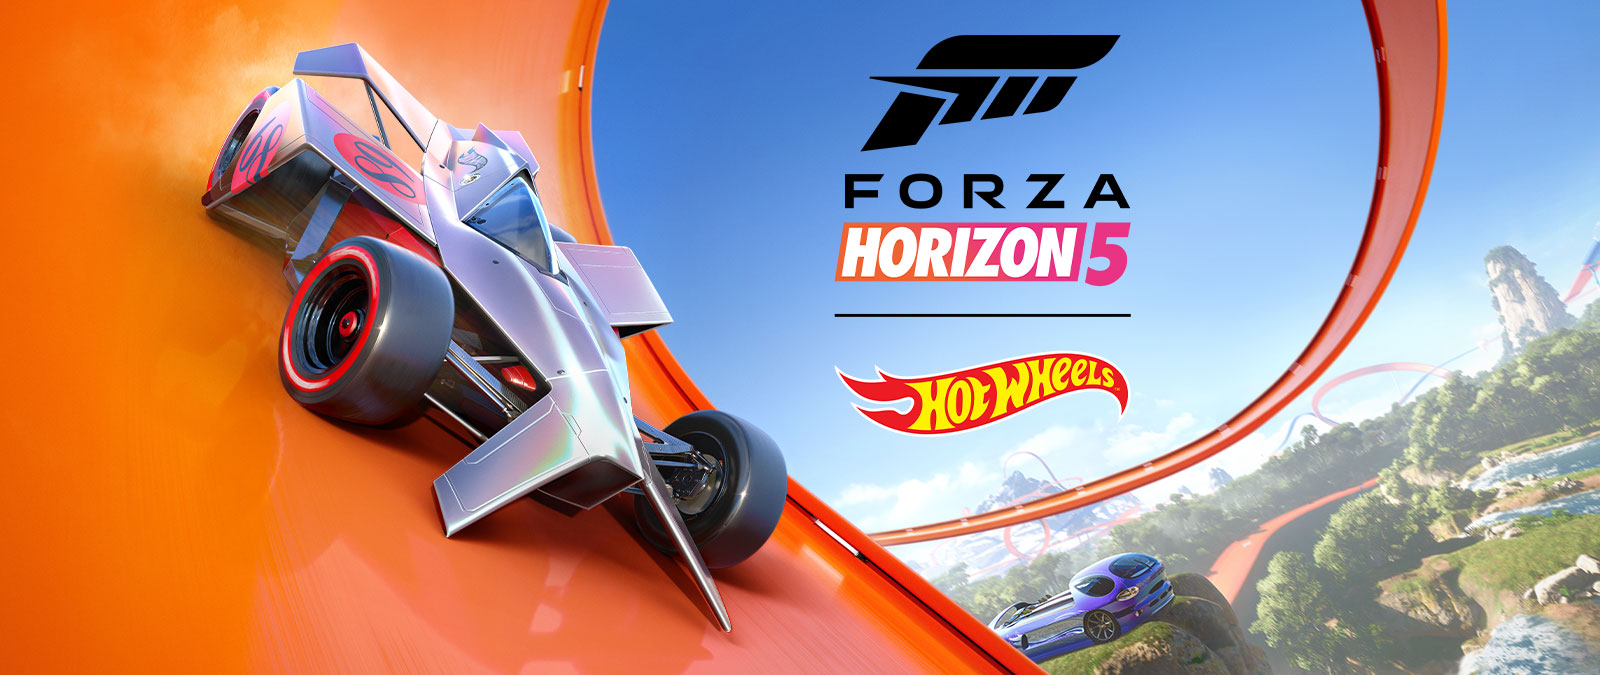 Forza Horizon 5, Hot Wheels, bir araba bir Hot Wheels pist döngüsünde yarışıyor.